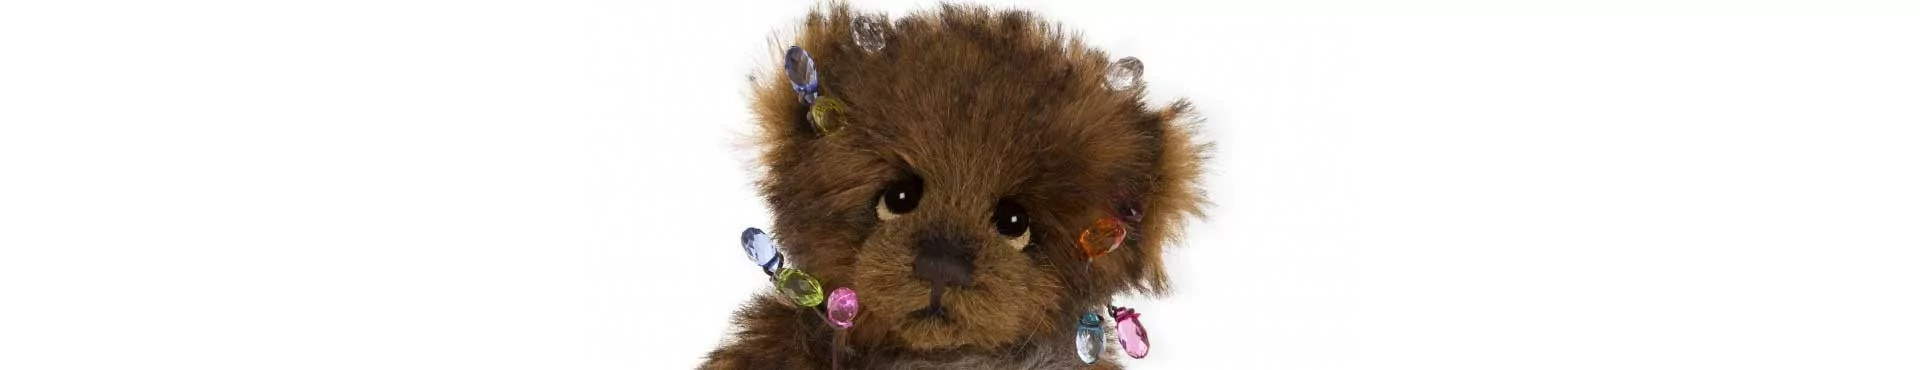 Découvrez la miniature ours de la collection Minimo de Charlie Bears